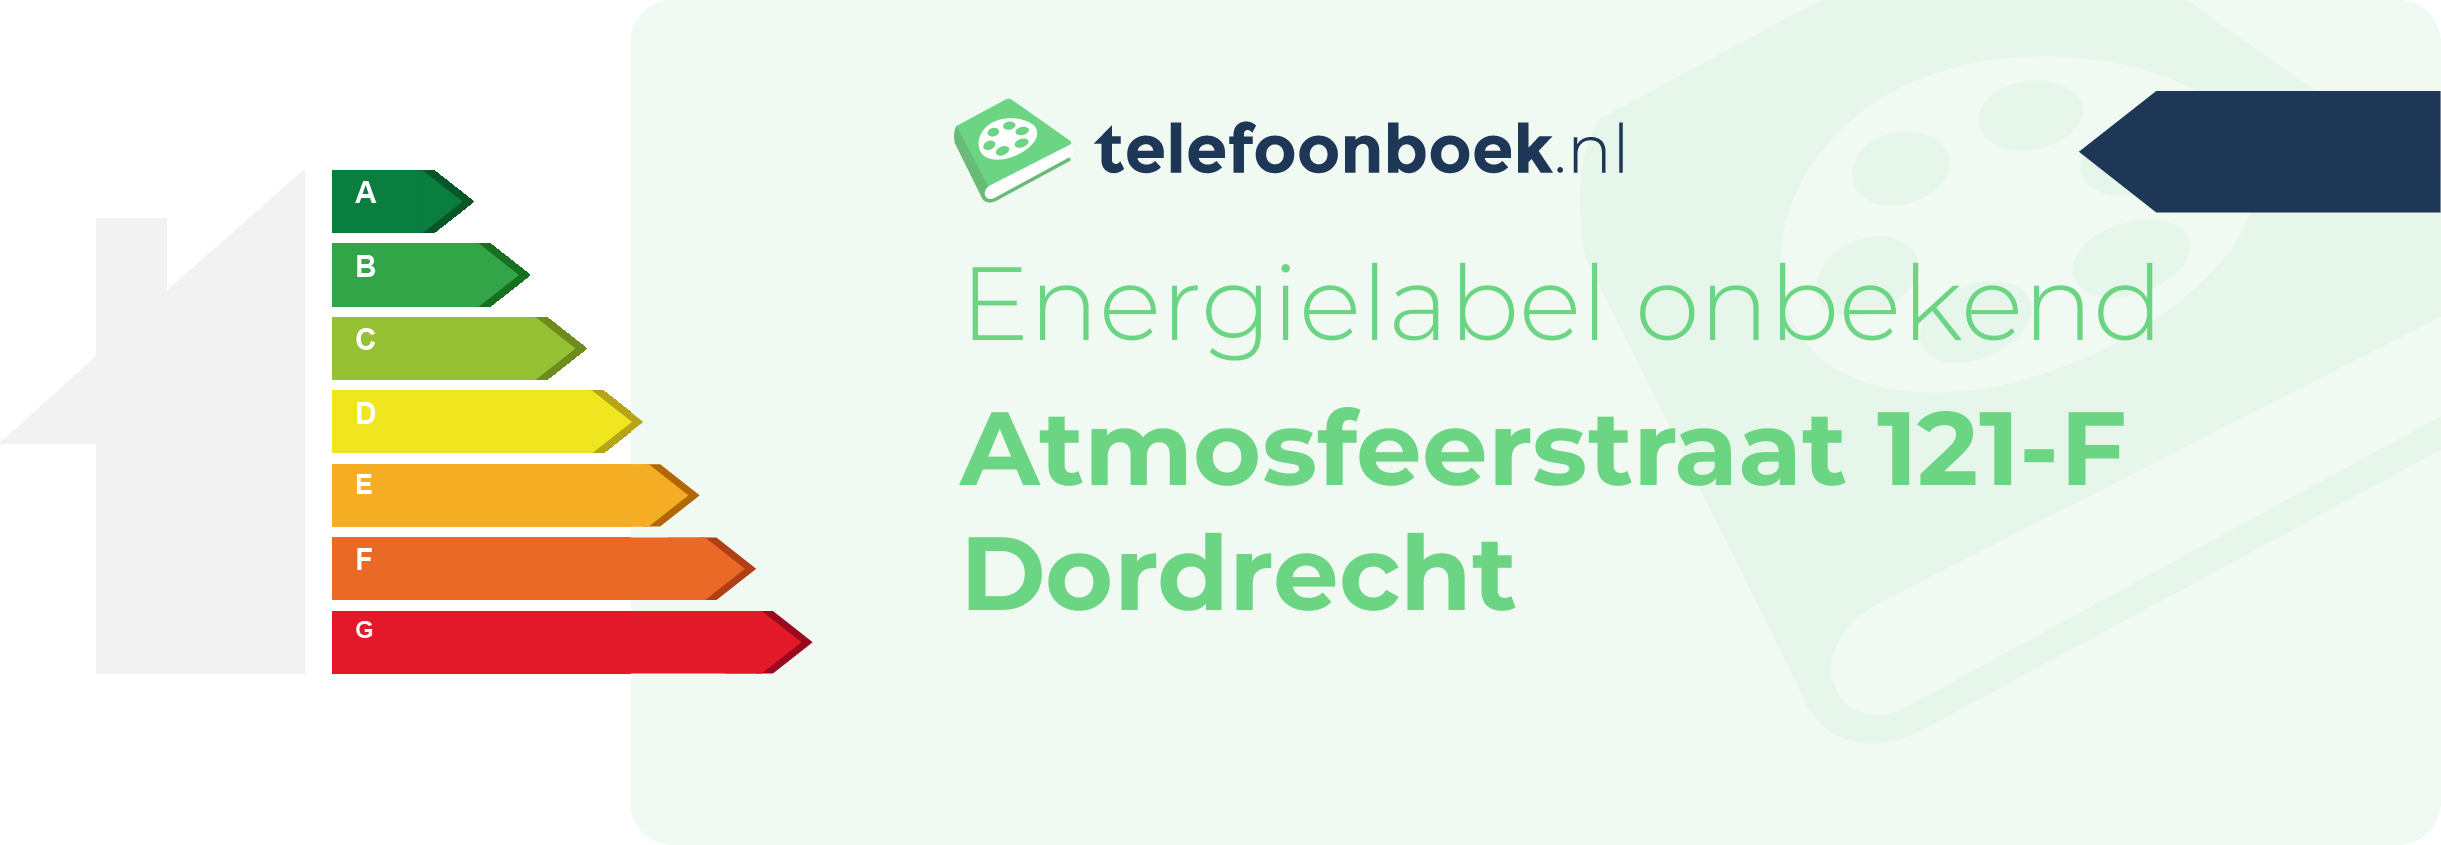 Energielabel Atmosfeerstraat 121-F Dordrecht